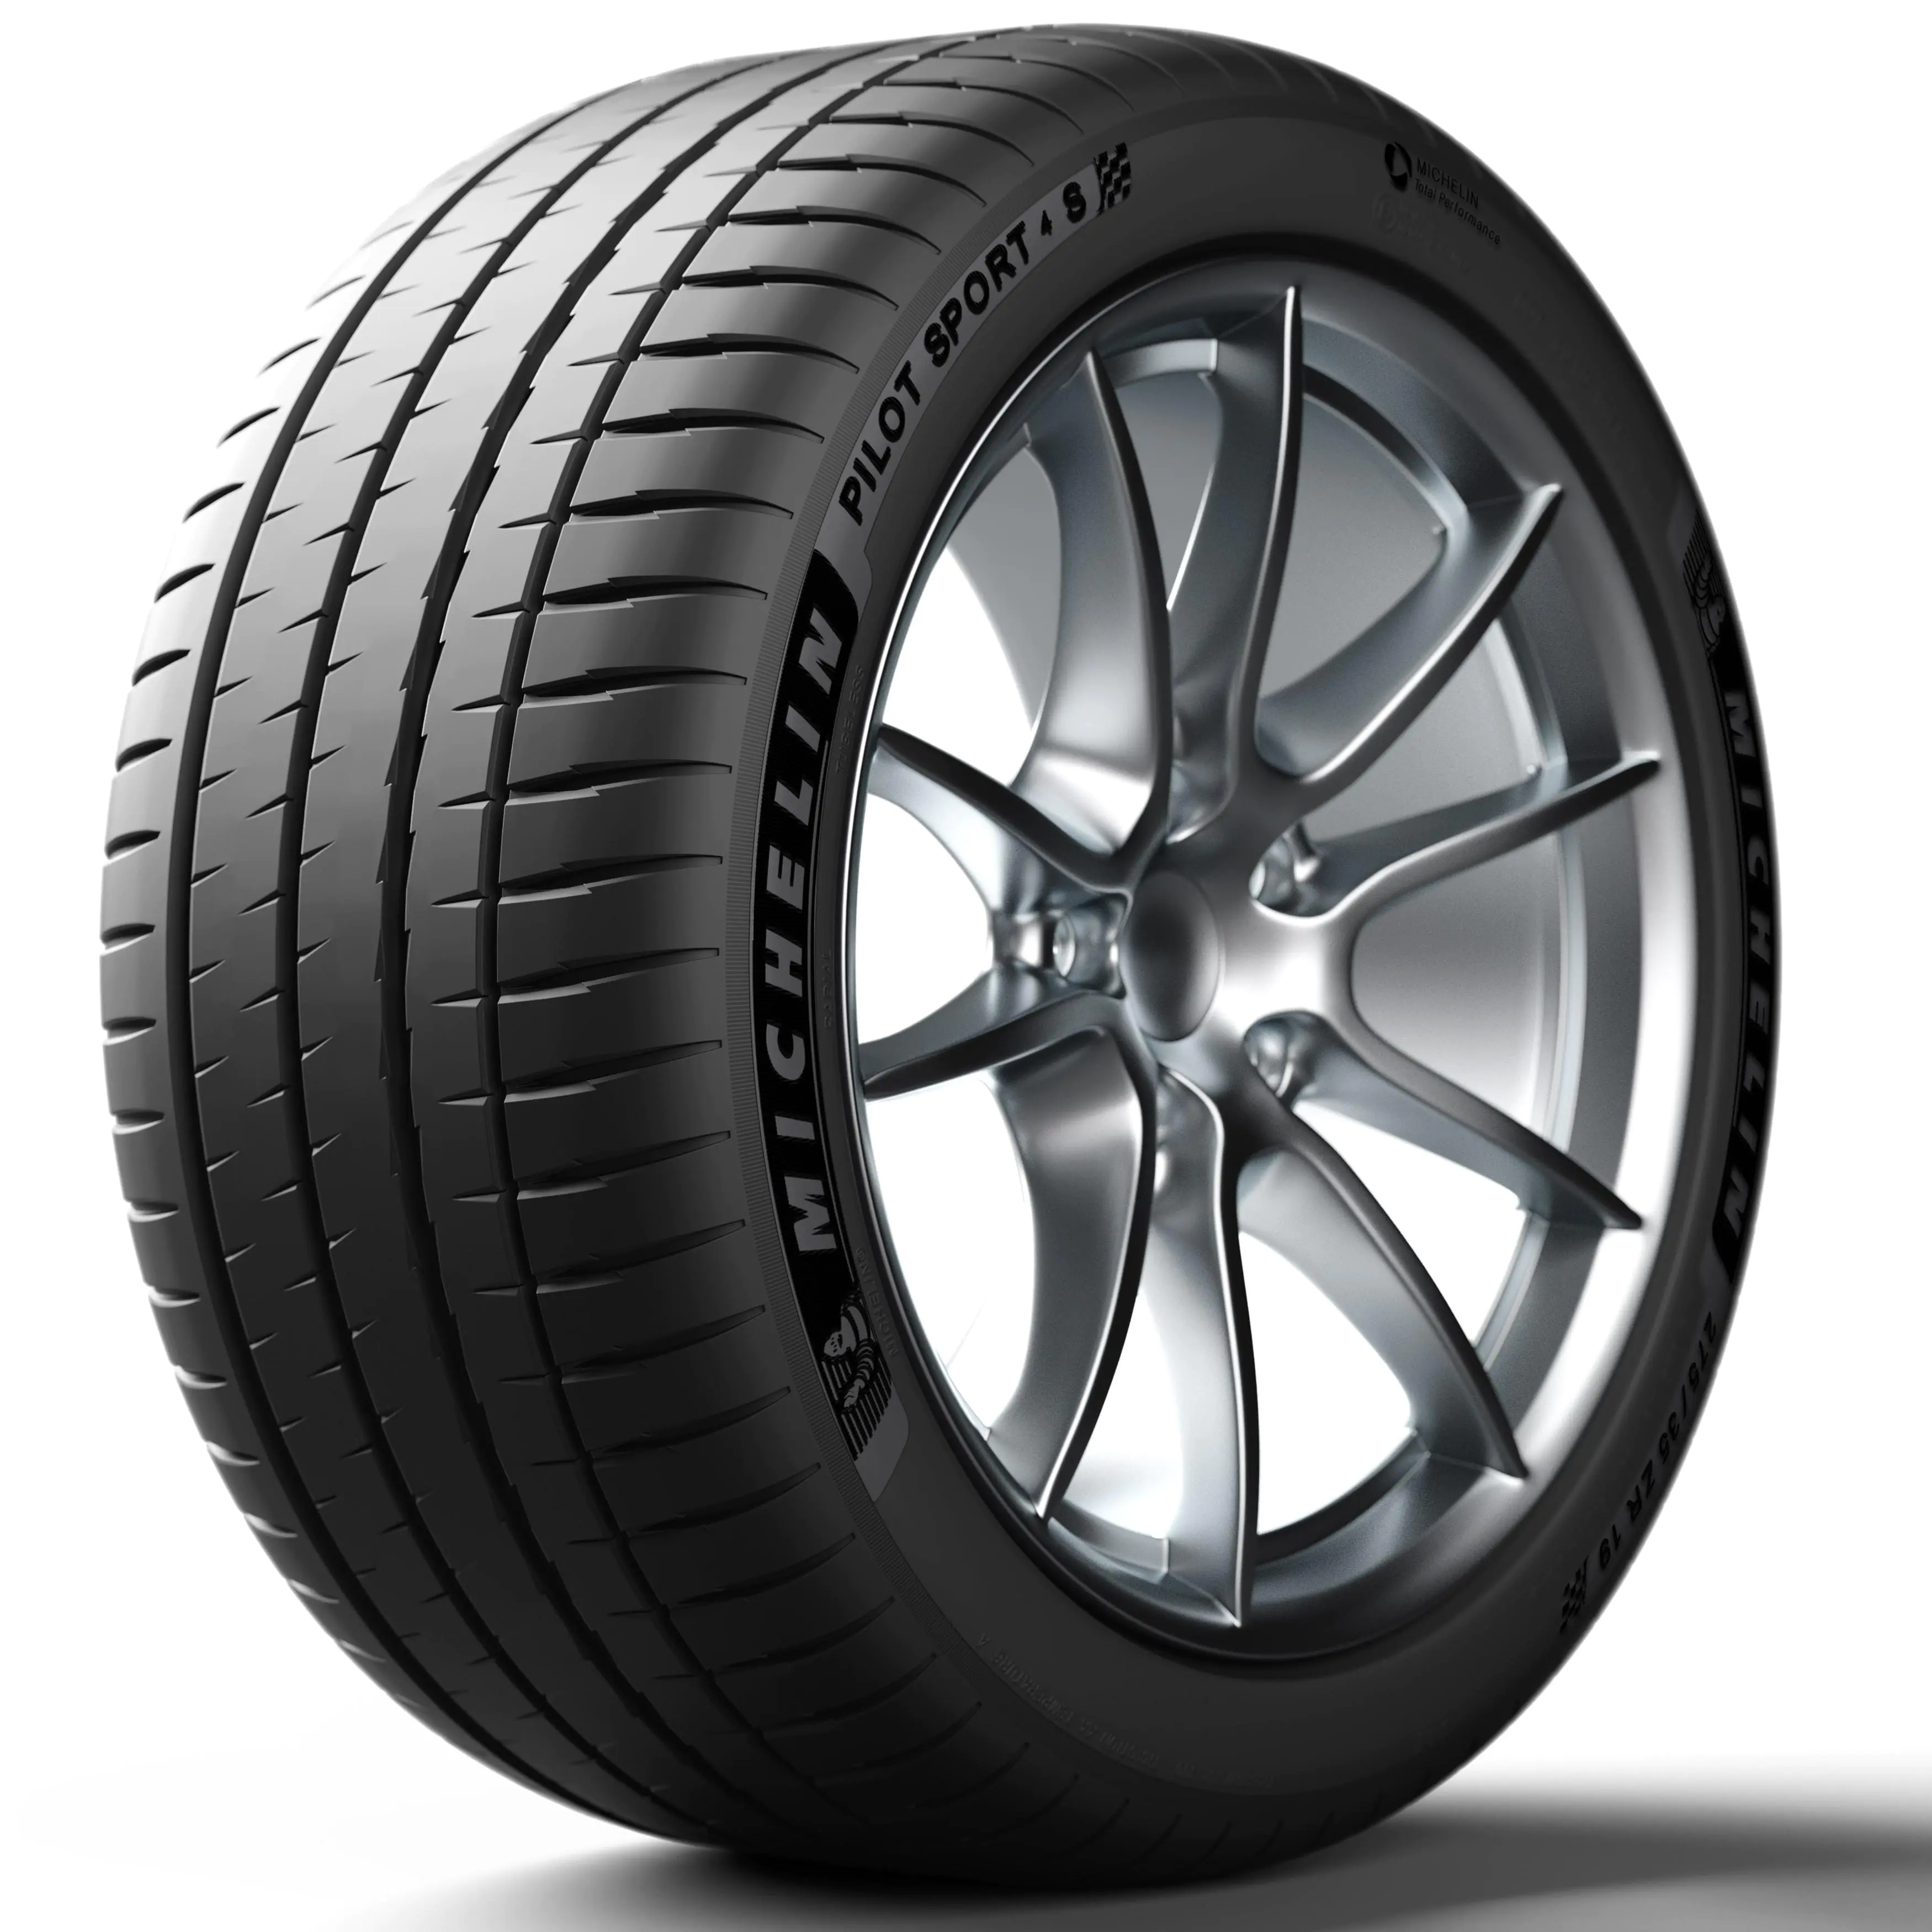 Michelin Michelin 255/40 R20 101Y P.SPORT 4 S XL pneumatici nuovi Estivo 